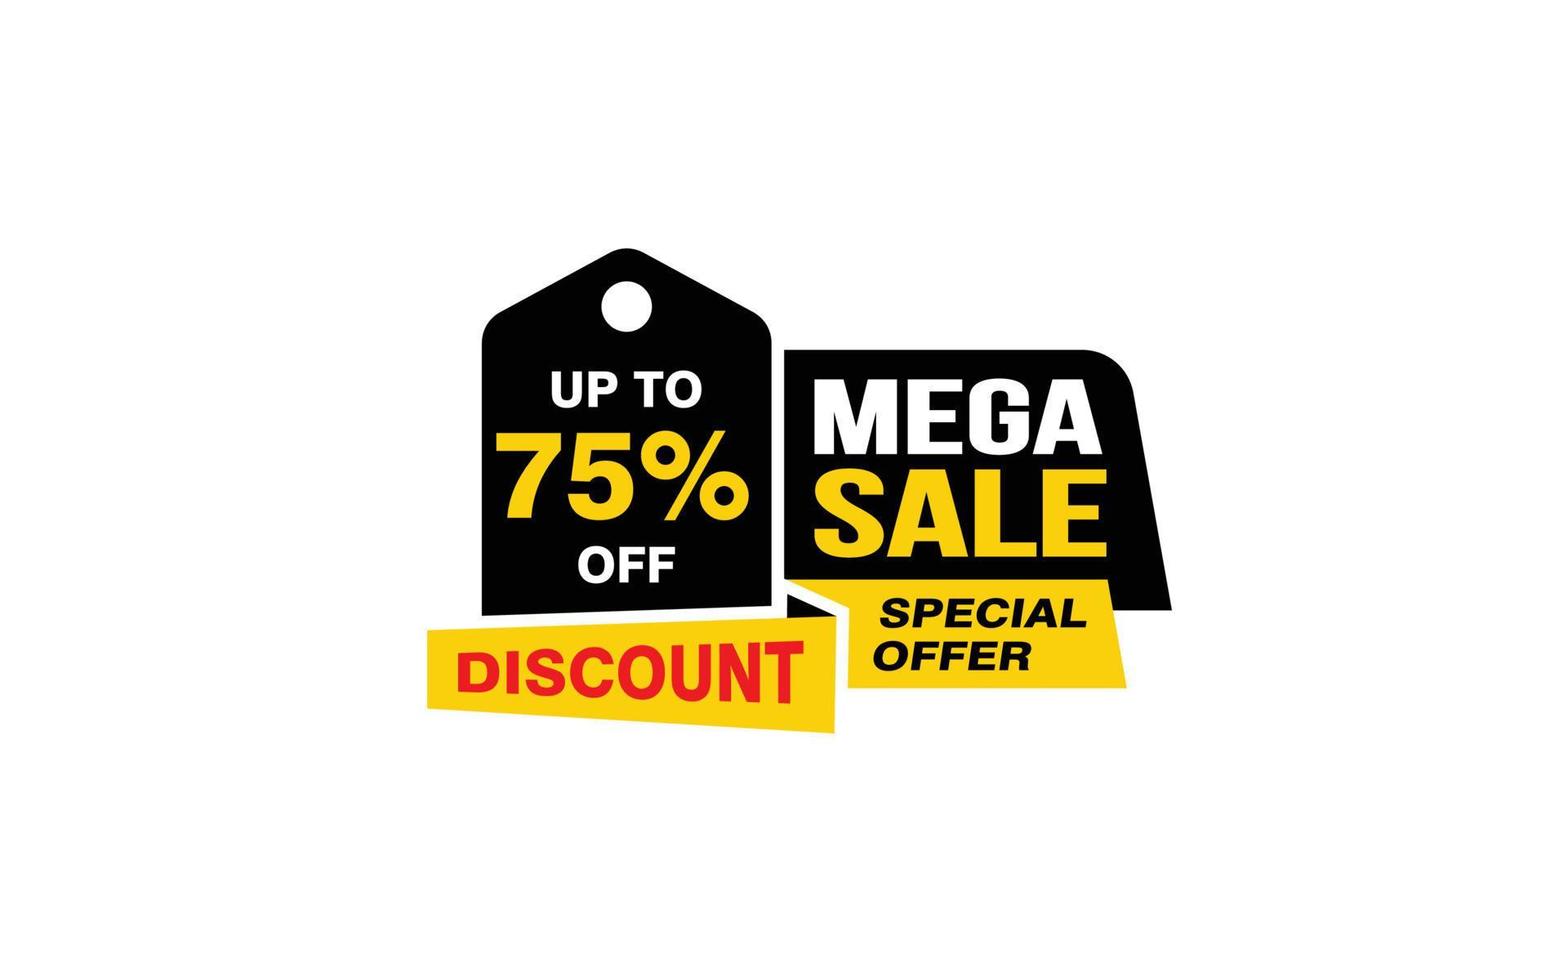 Oferta de mega venda de 75%, liberação, layout de banner de promoção com estilo de adesivo. vetor